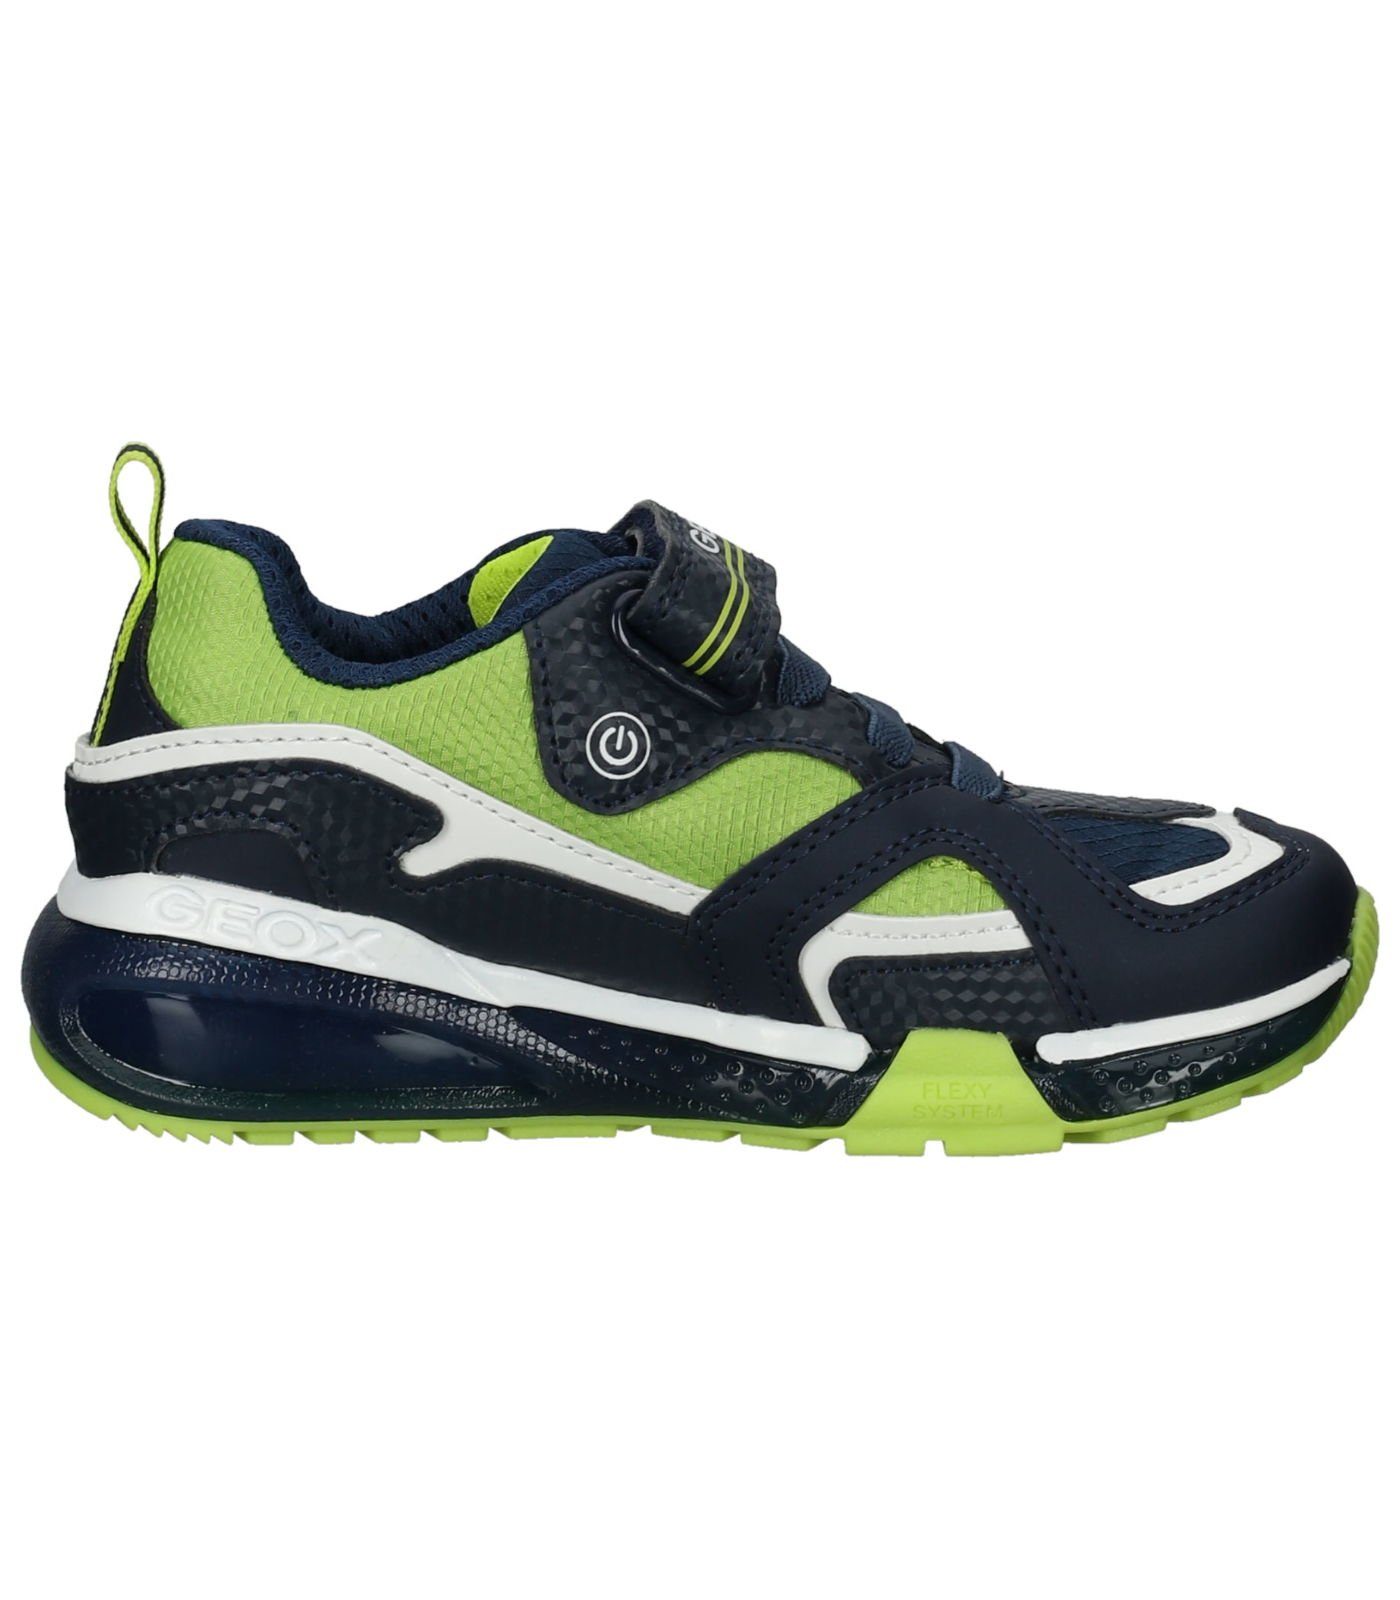 Geox Sneaker Lederimitat/Textil Sneaker Navy Lime